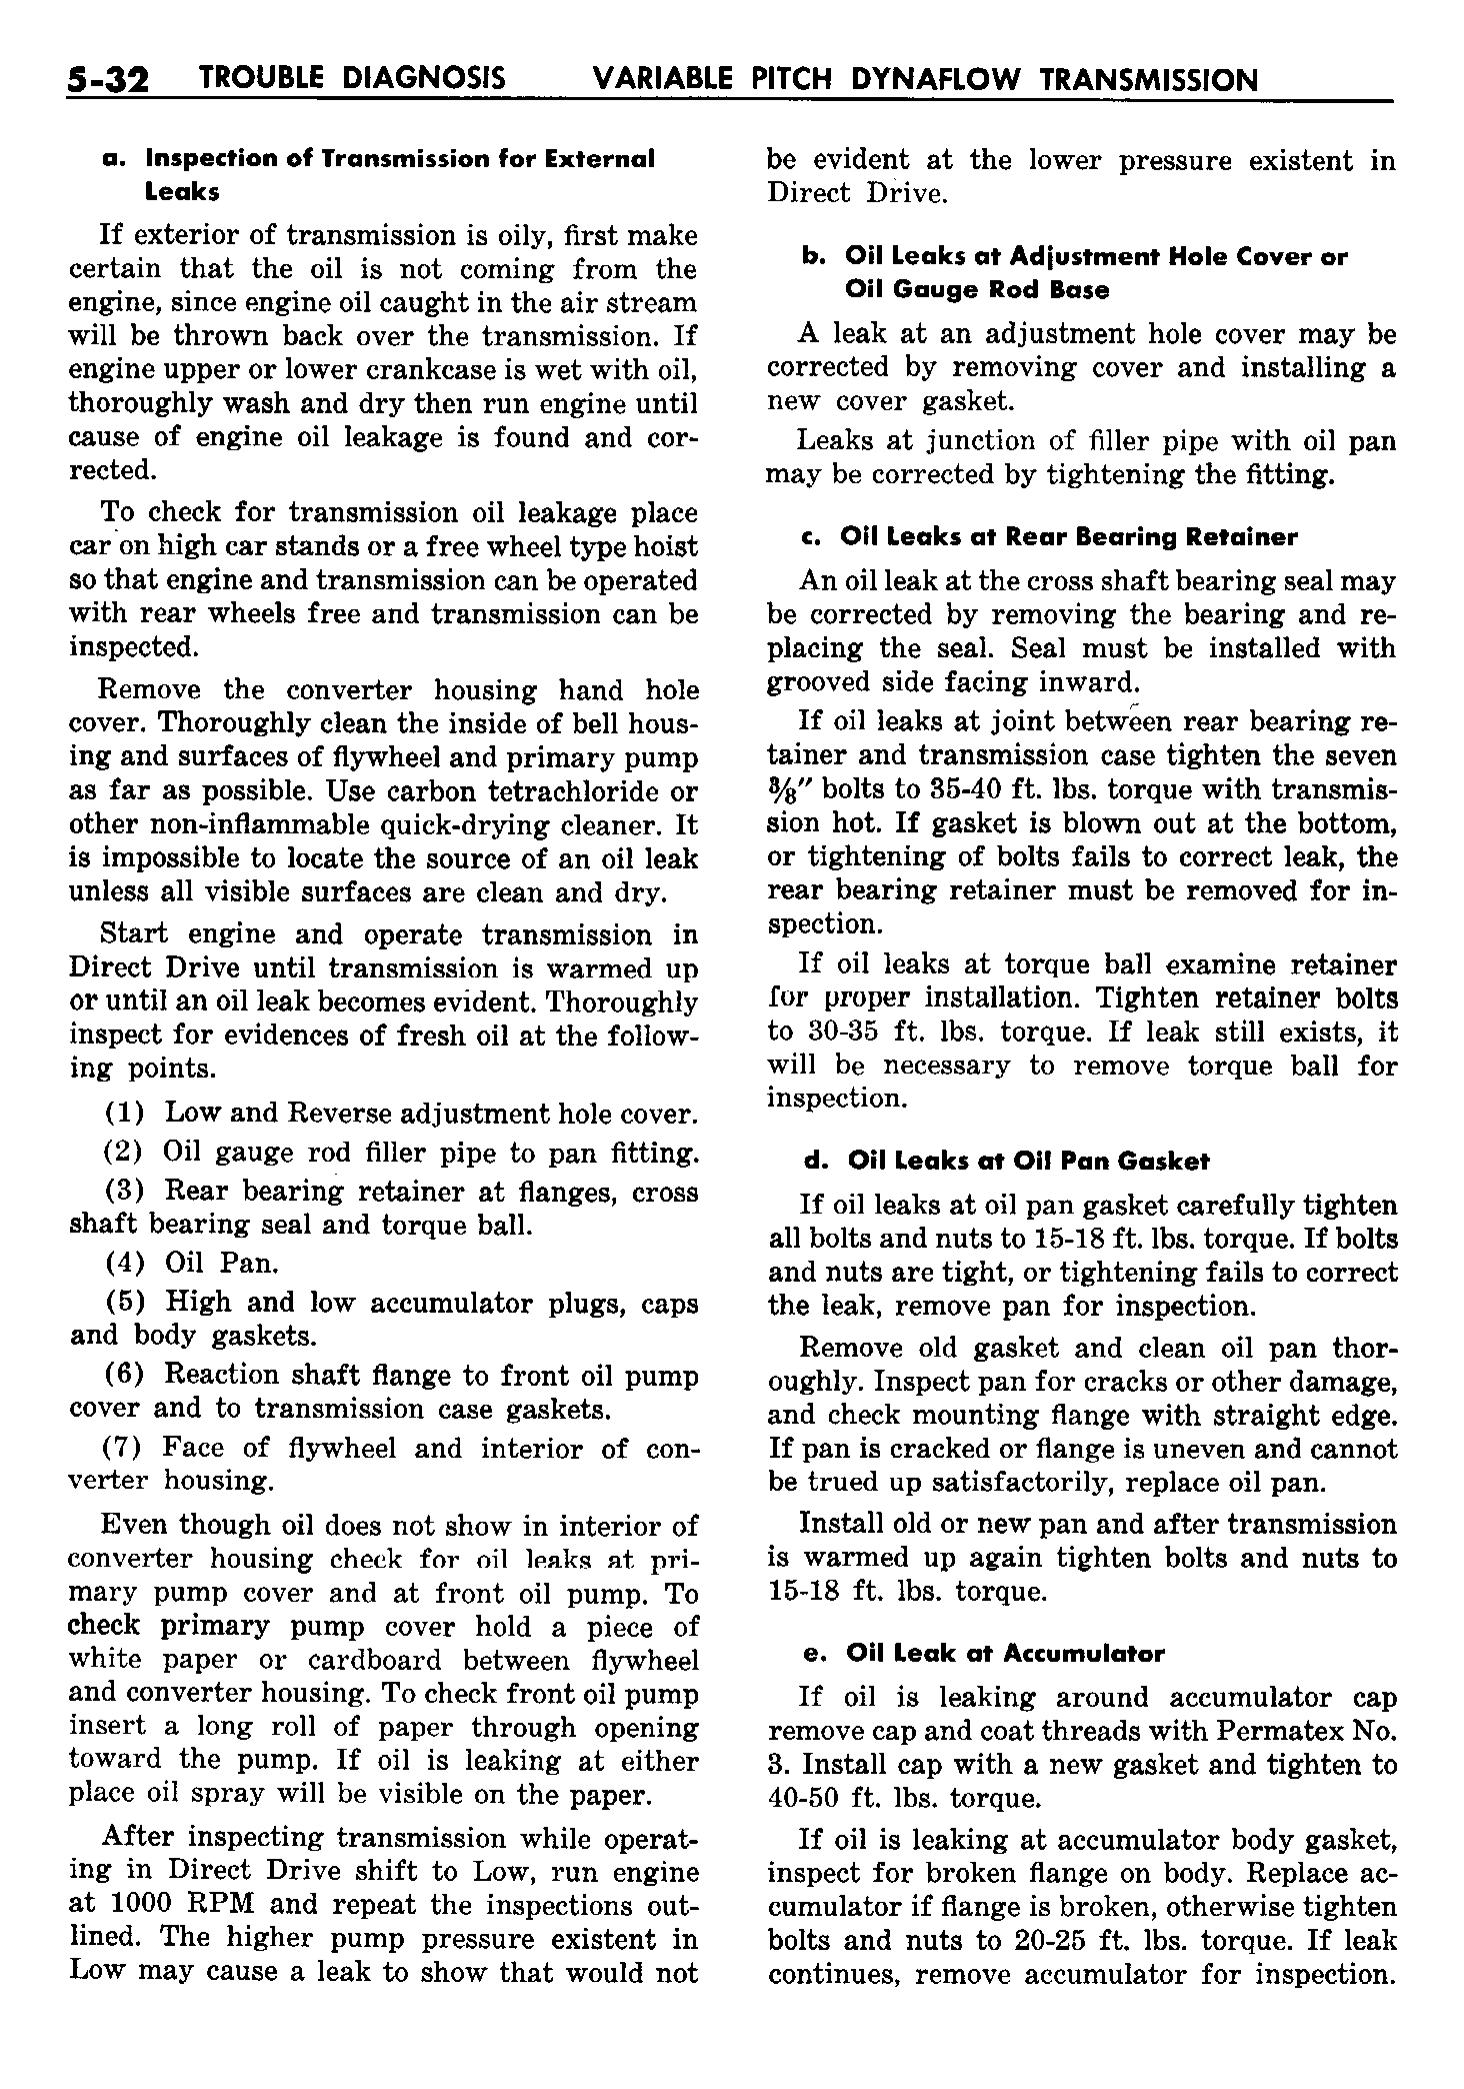 n_06 1958 Buick Shop Manual - Dynaflow_32.jpg